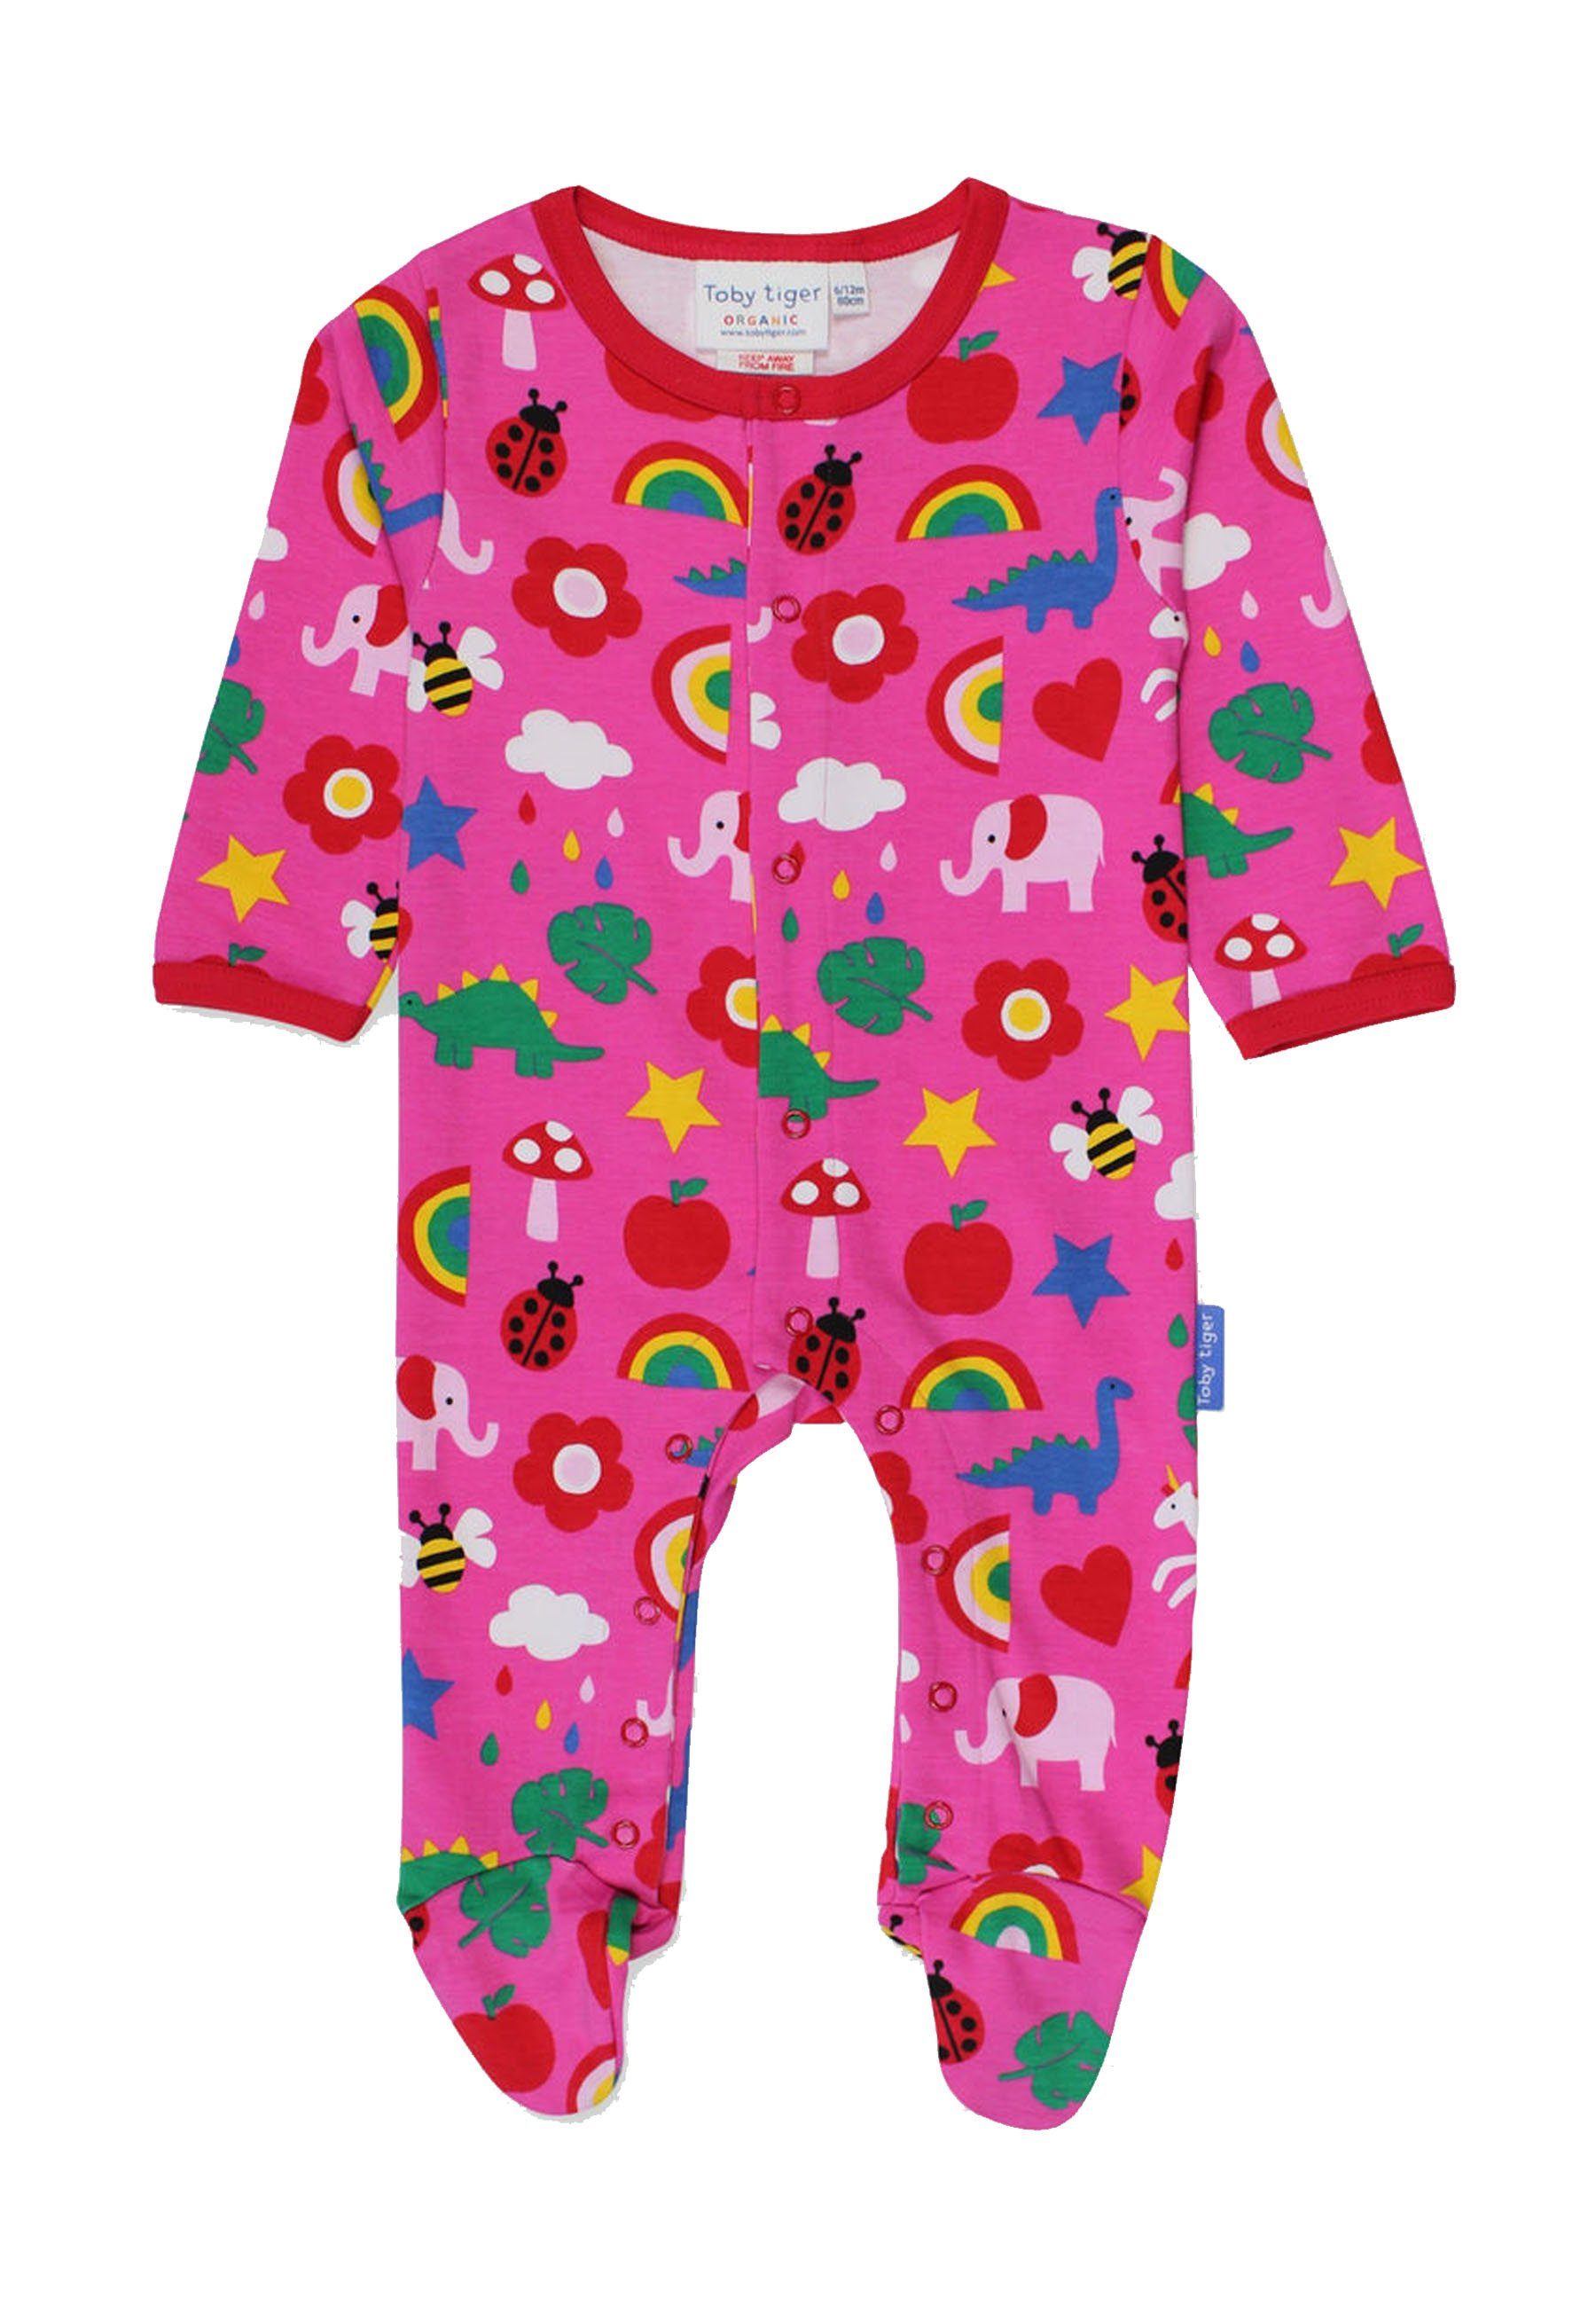 Toby Print Spielzeug mit Tiger Schlafanzug Schlafanzug